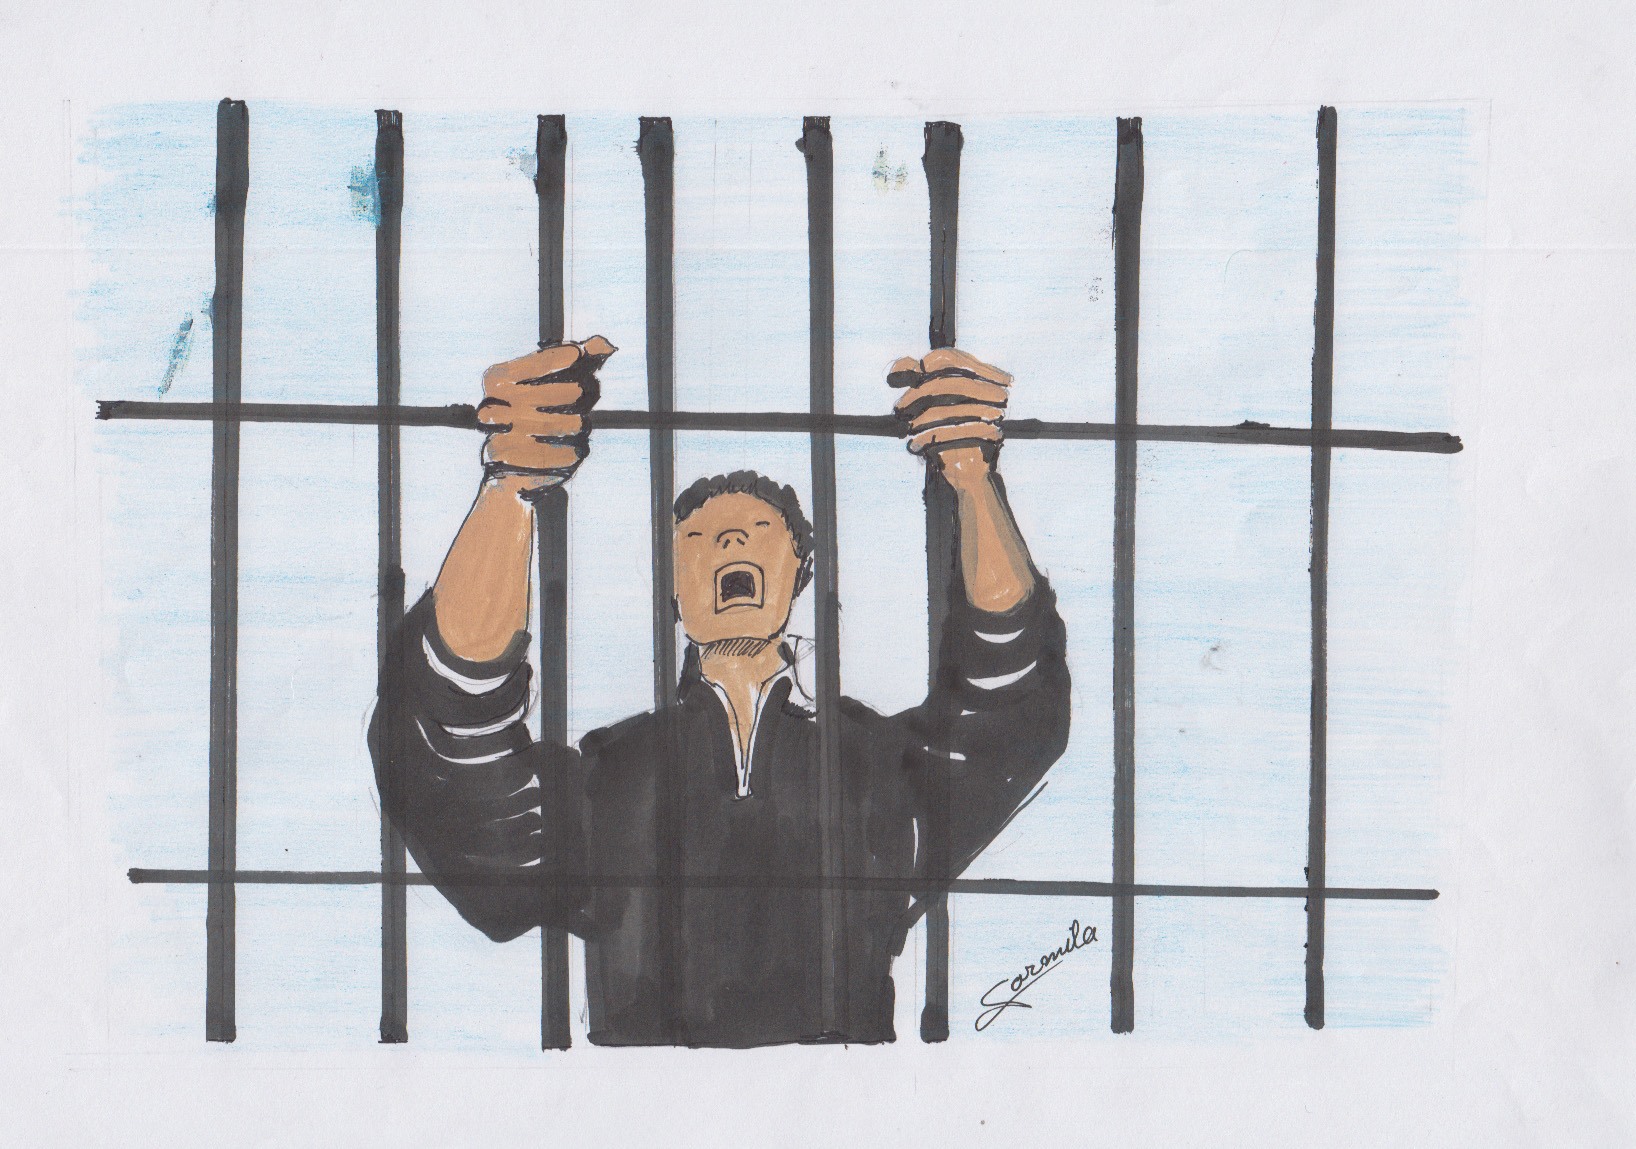 कुटपिट मुद्दका अभियुक्तलाई आठ वर्ष कैद, तीन लाख जरिवाना